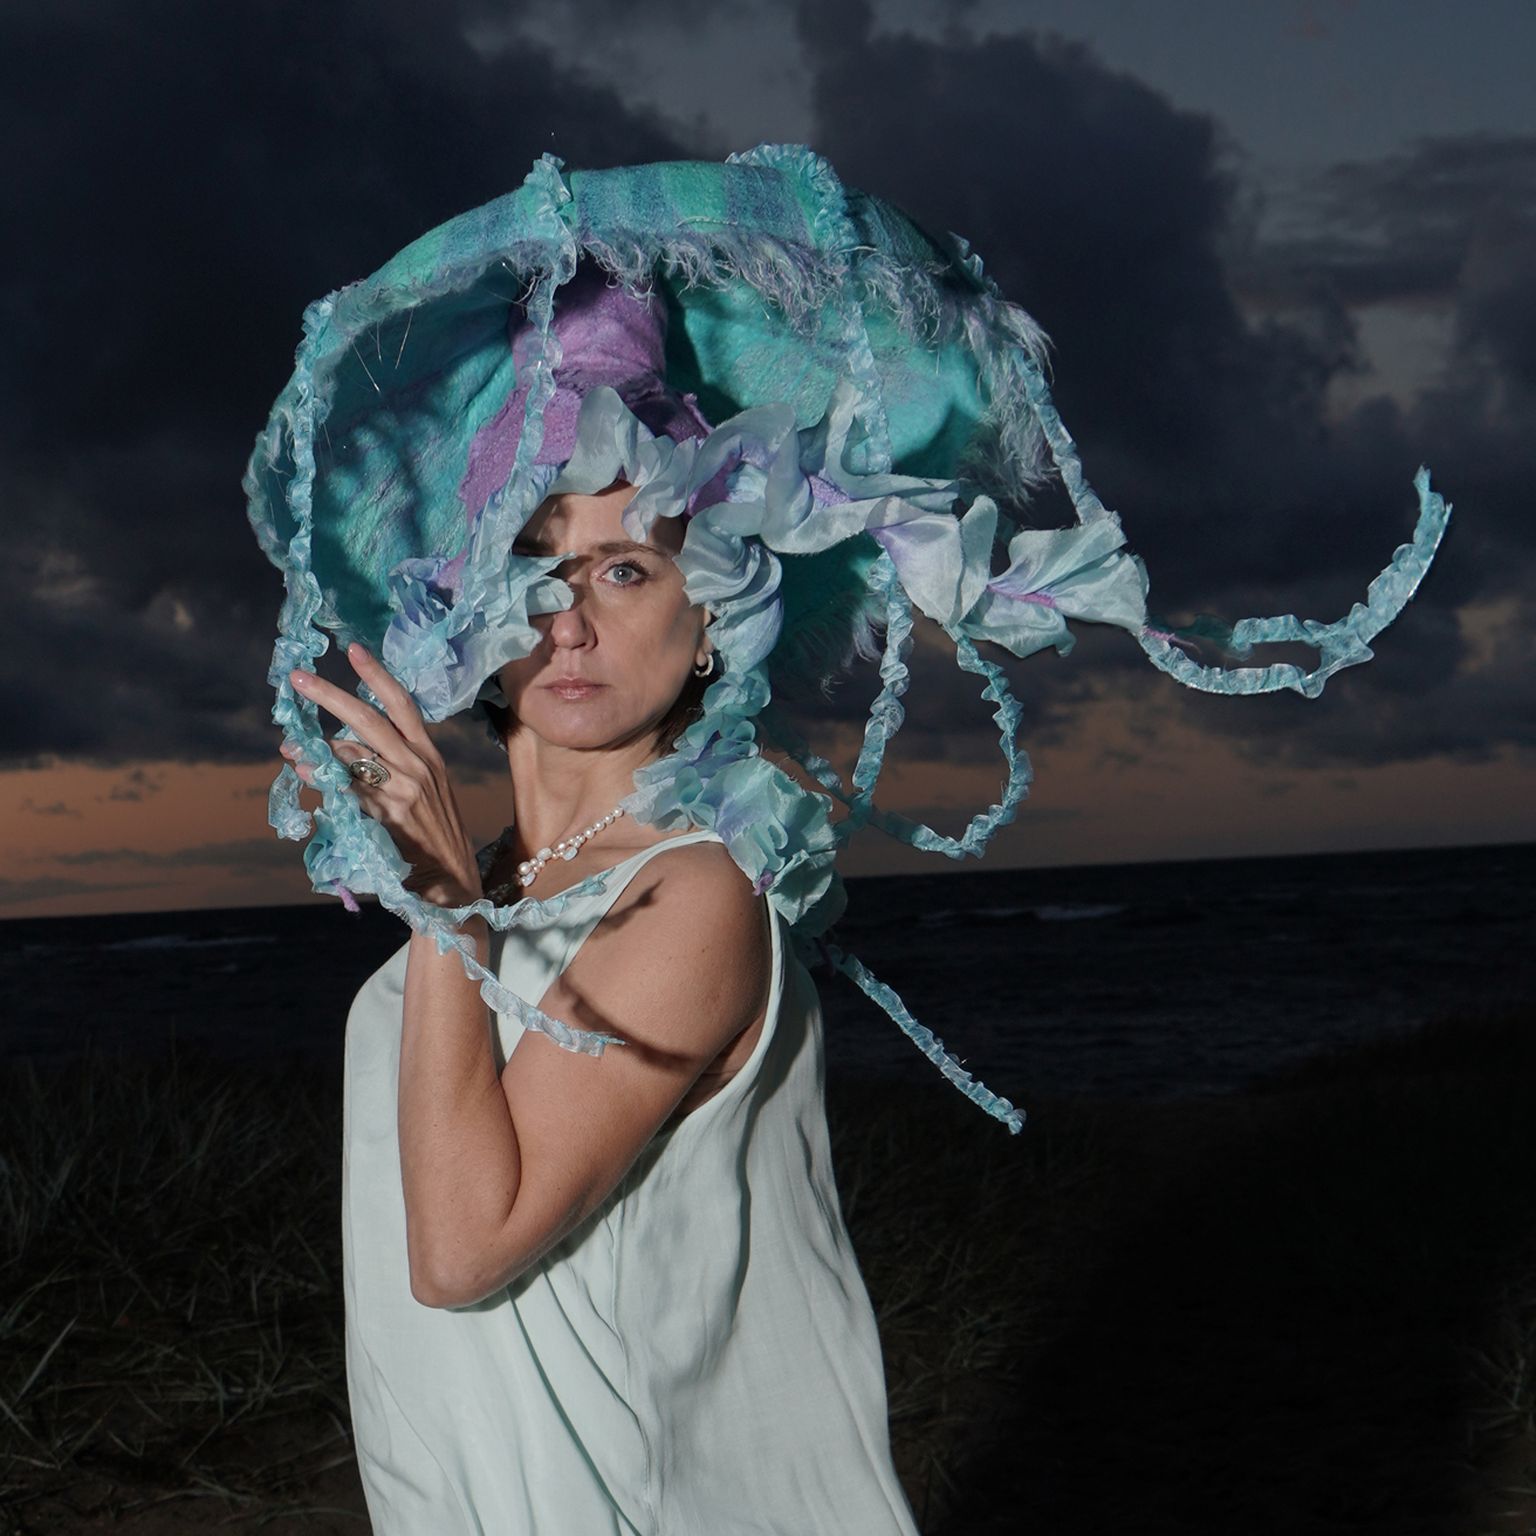 Конкурсная работа «Шляпа-медуза», которая еще и светится в темноте благодаря 
внедренному источнику света и оптоволоконным нитям.